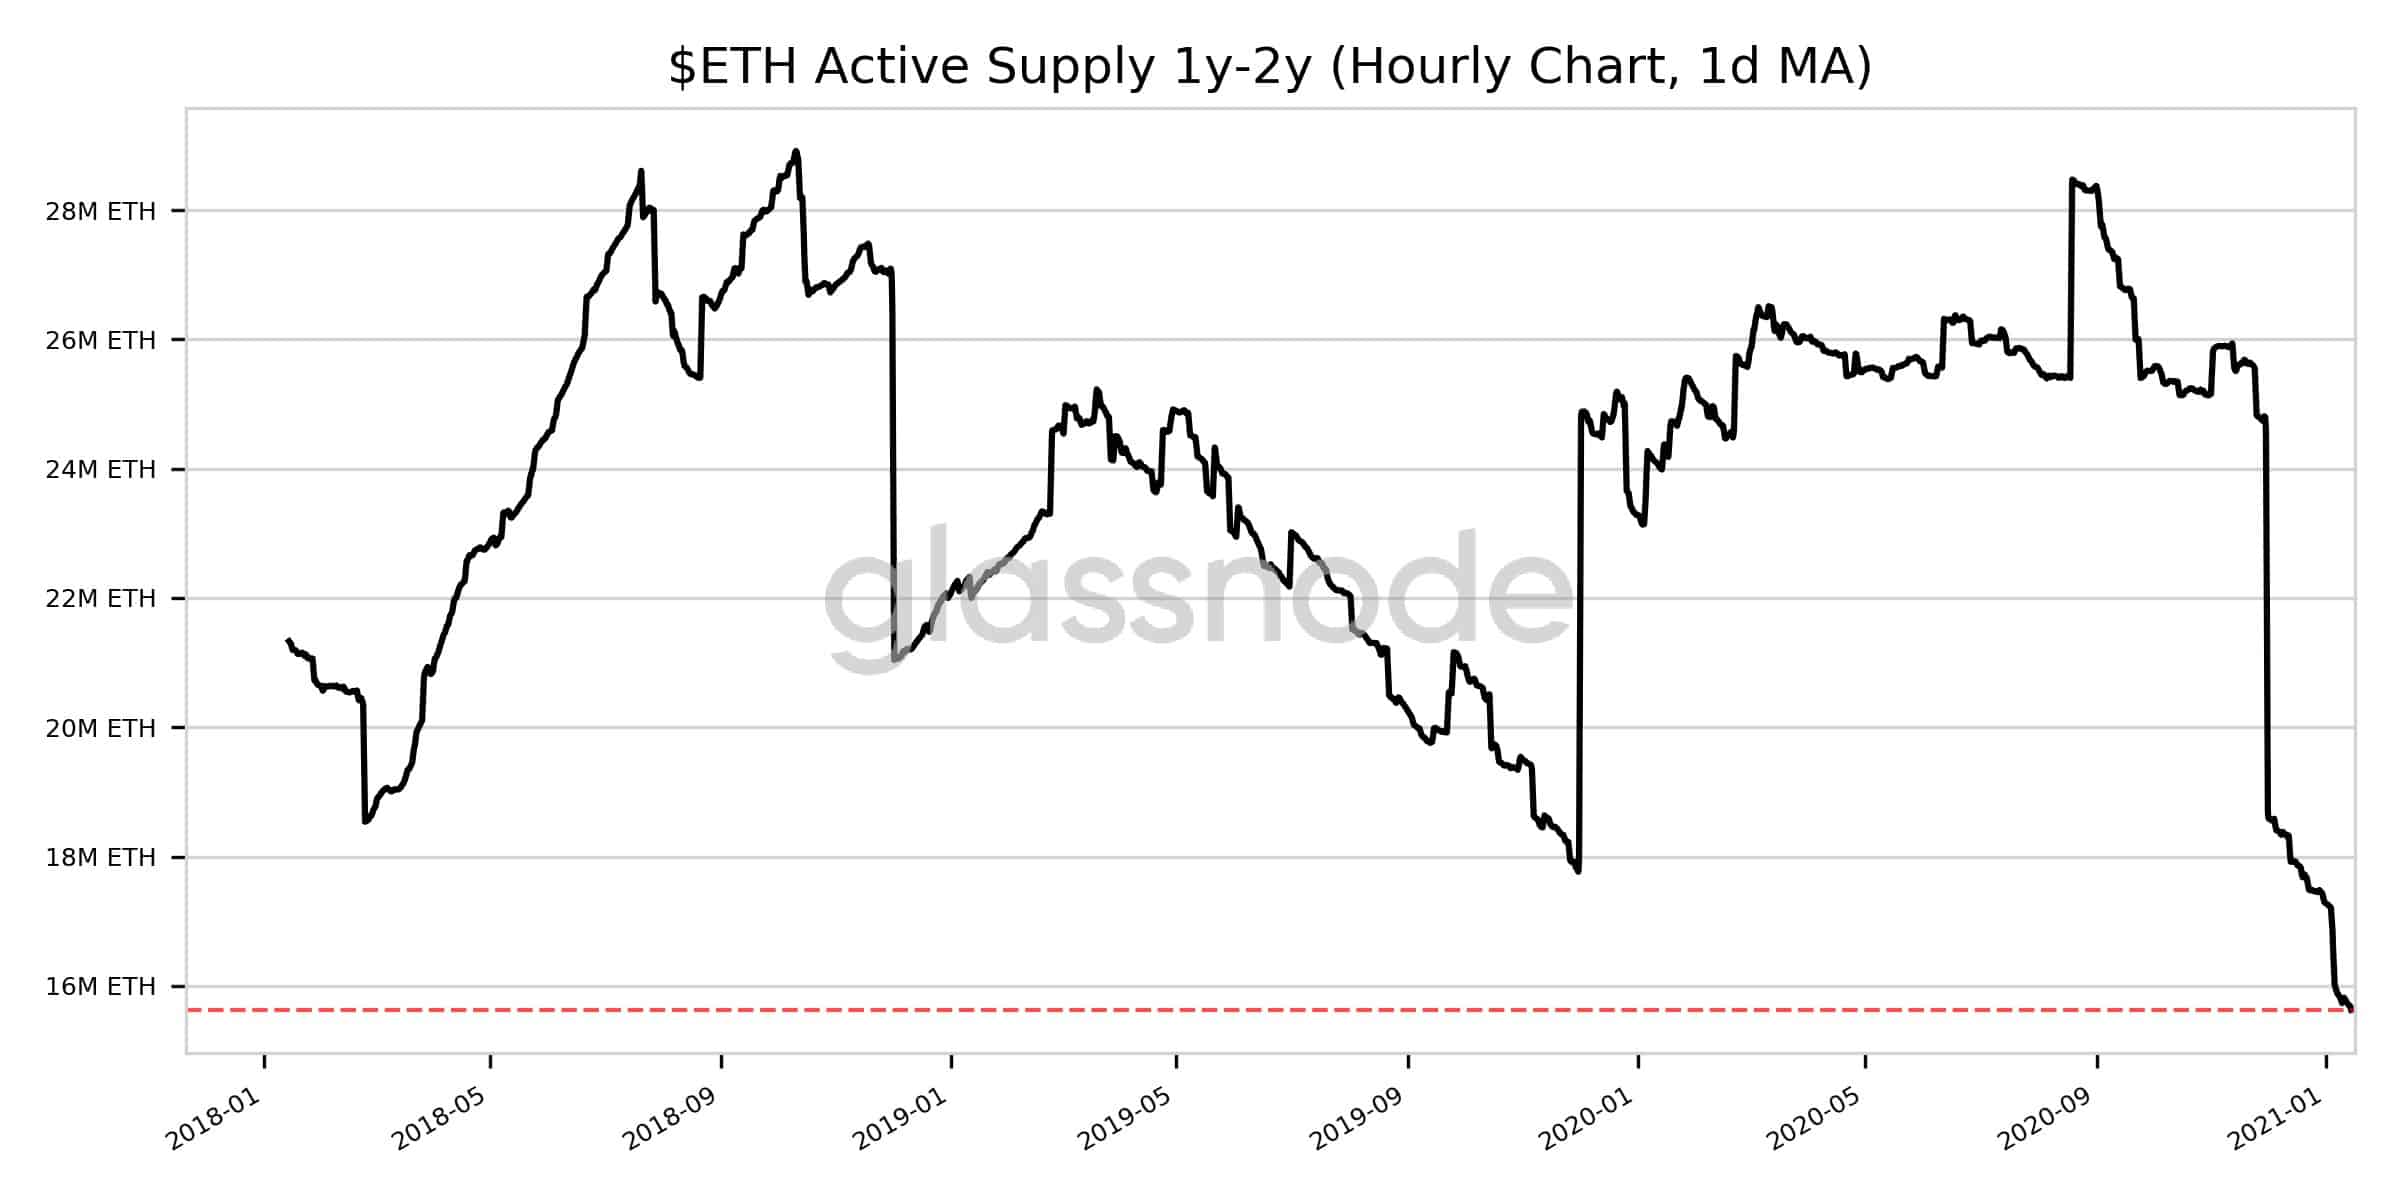 ETH Active 1y-2y Supply. Source: Glassnode